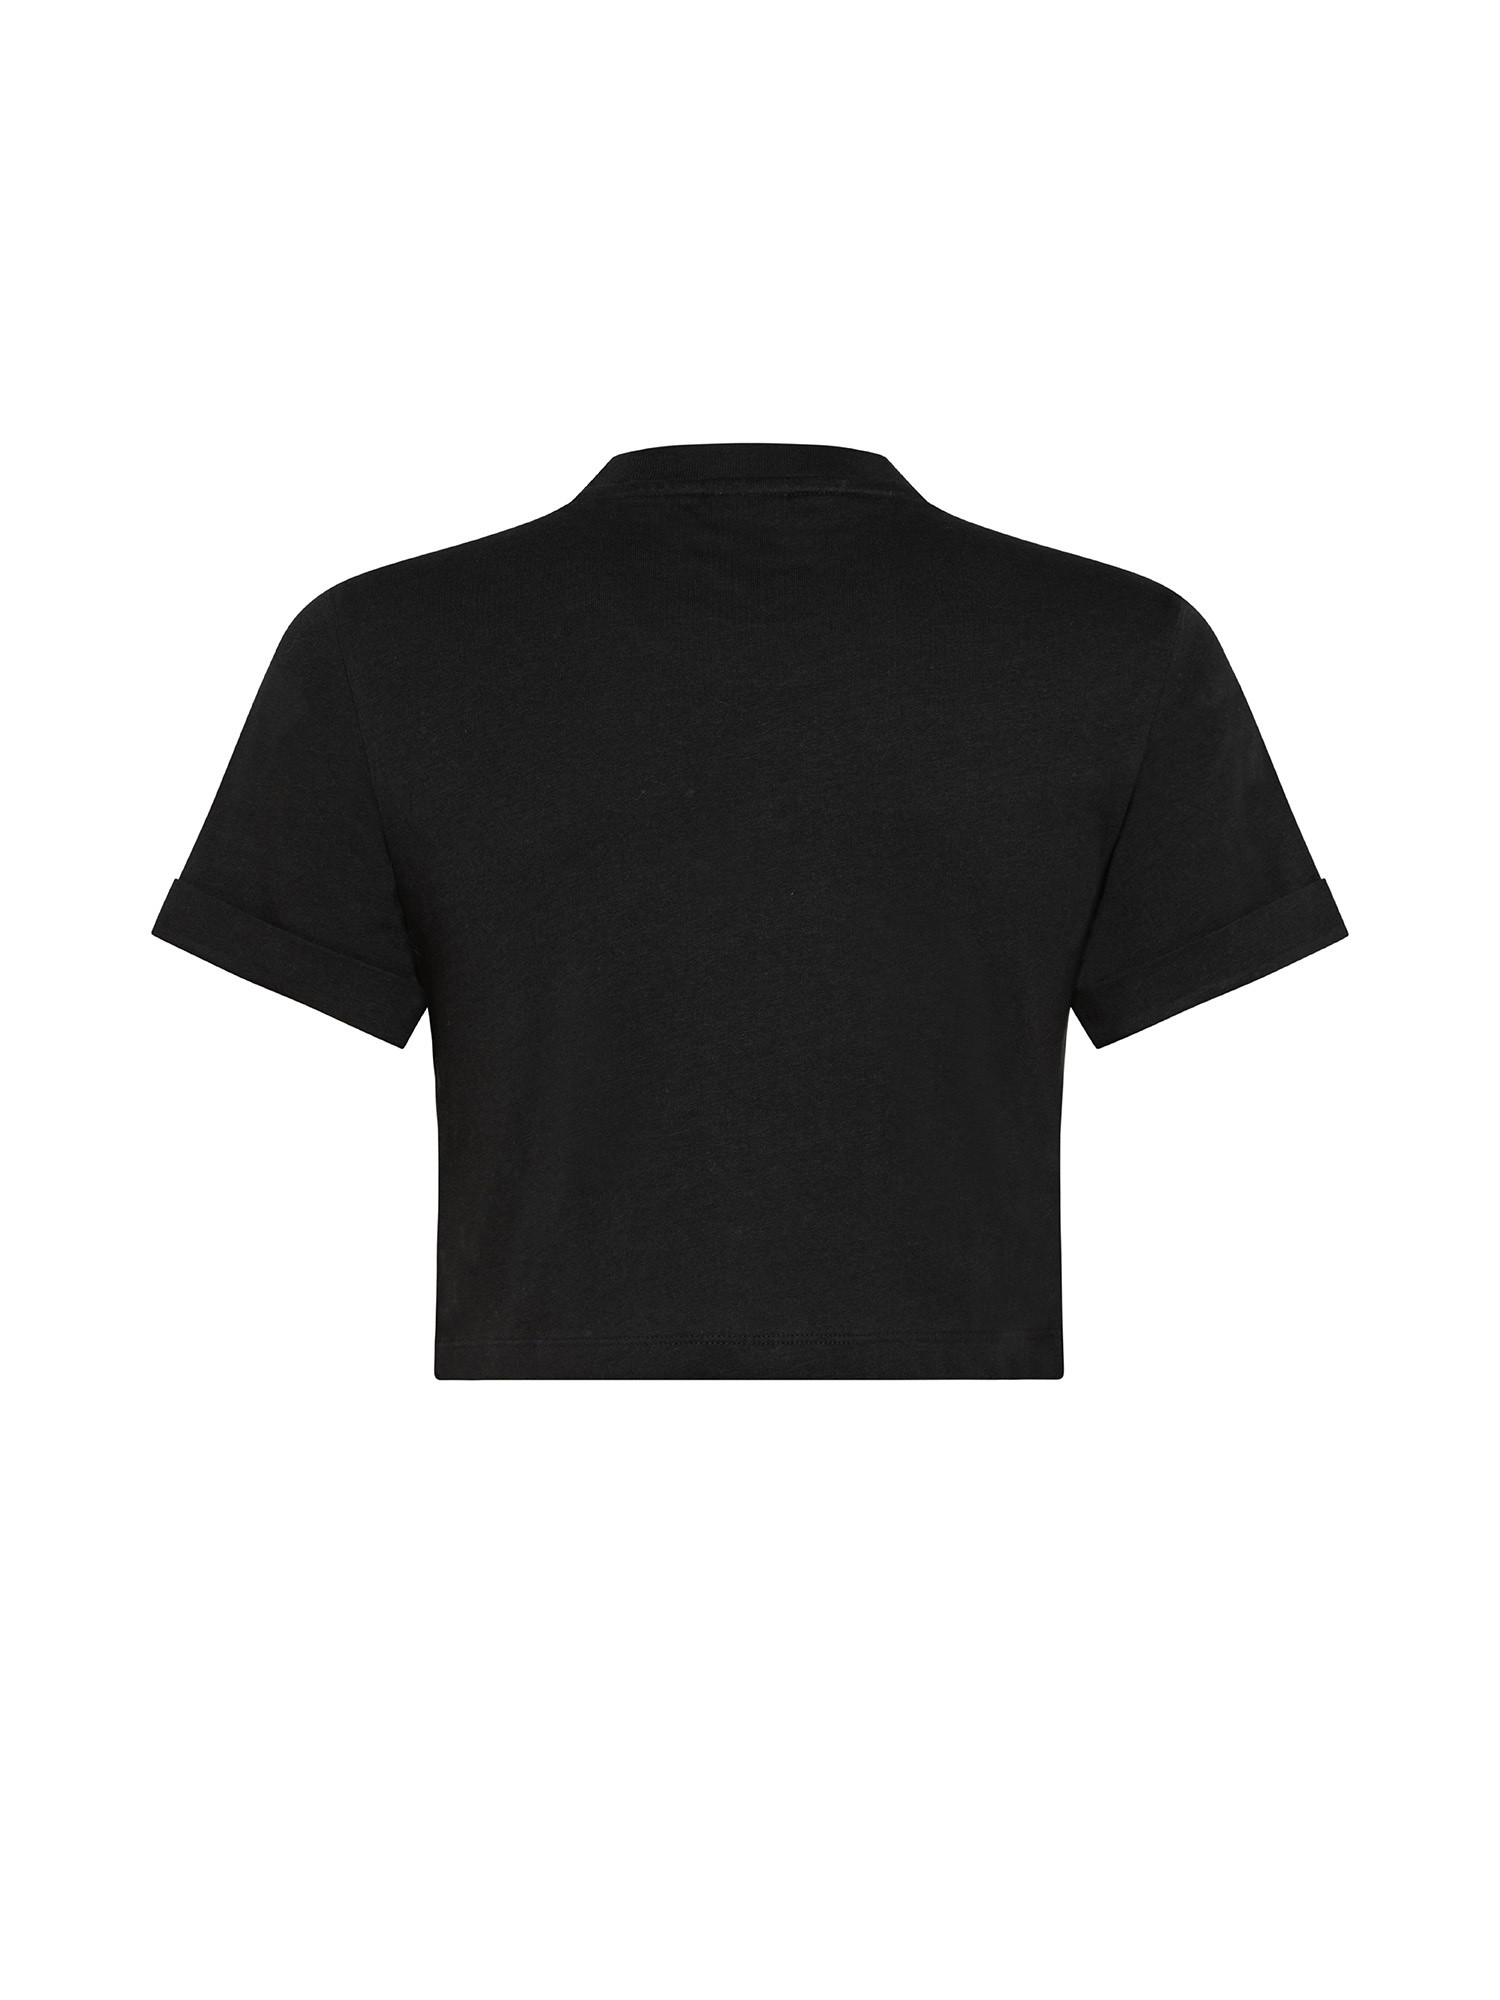 Essentials T-Shirt, Black, large image number 1